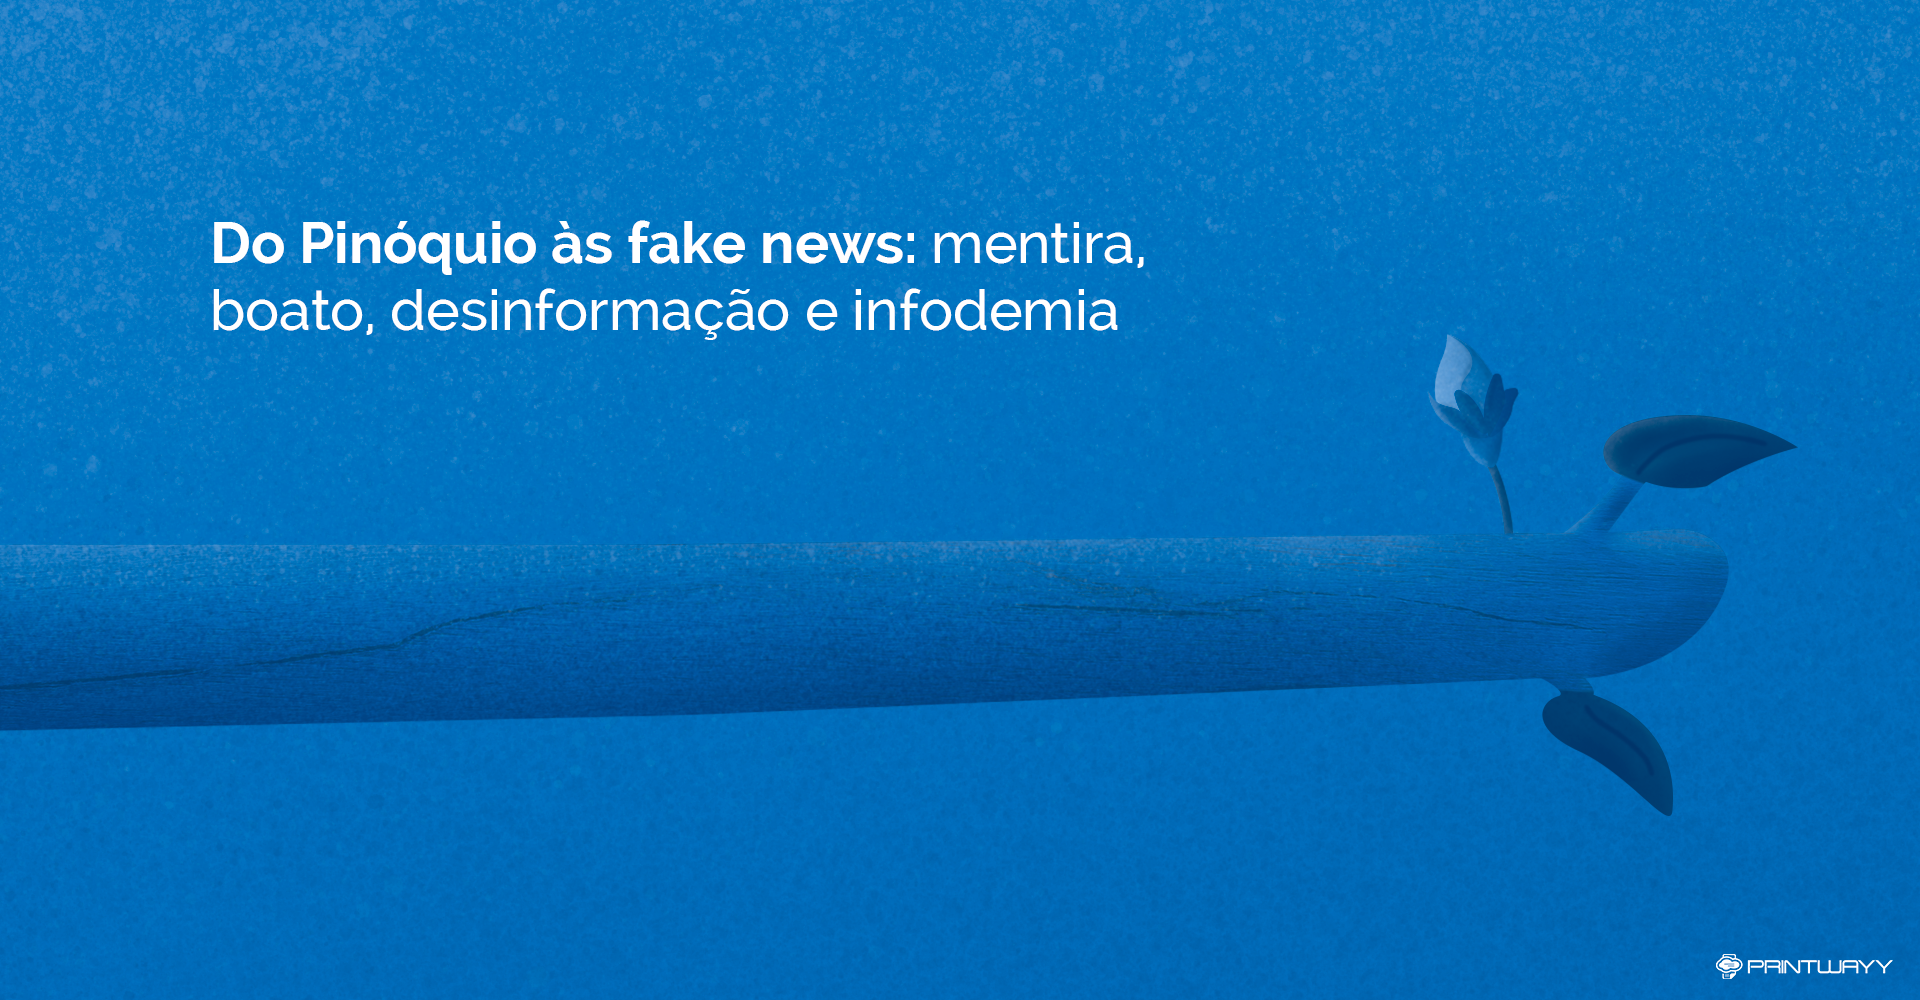 Ilustração do nariz do Pinóquio bem crescido de tanto contar mentiras, falar fake news, disseminar notícias falsas.